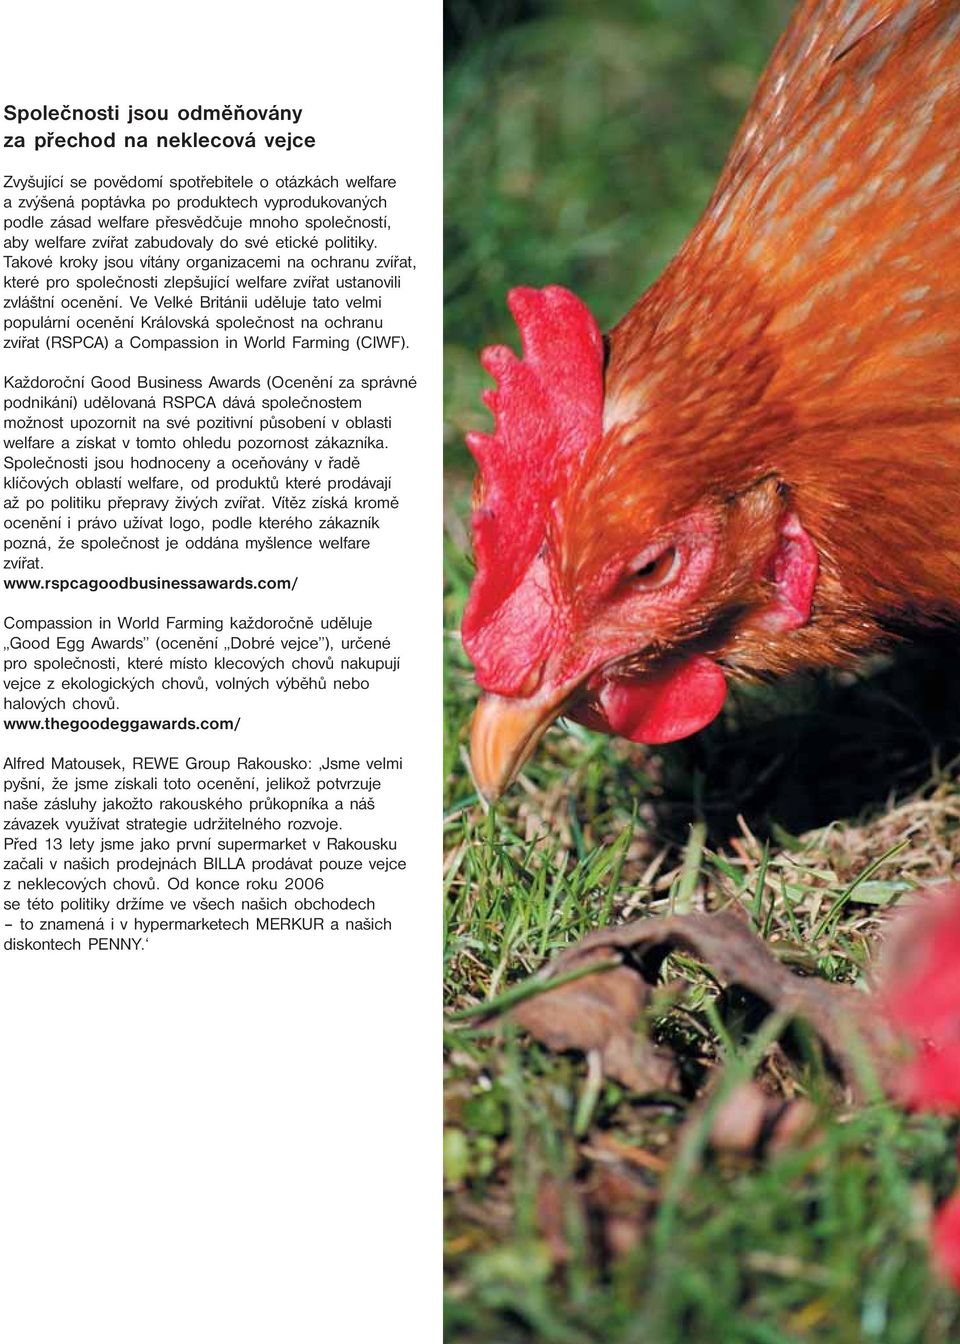 Ve Velké Británii uděluje tato velmi populární ocenění Královská společnost na ochranu zvířat (RSPCA) a Compassion in World Farming (CIWF).